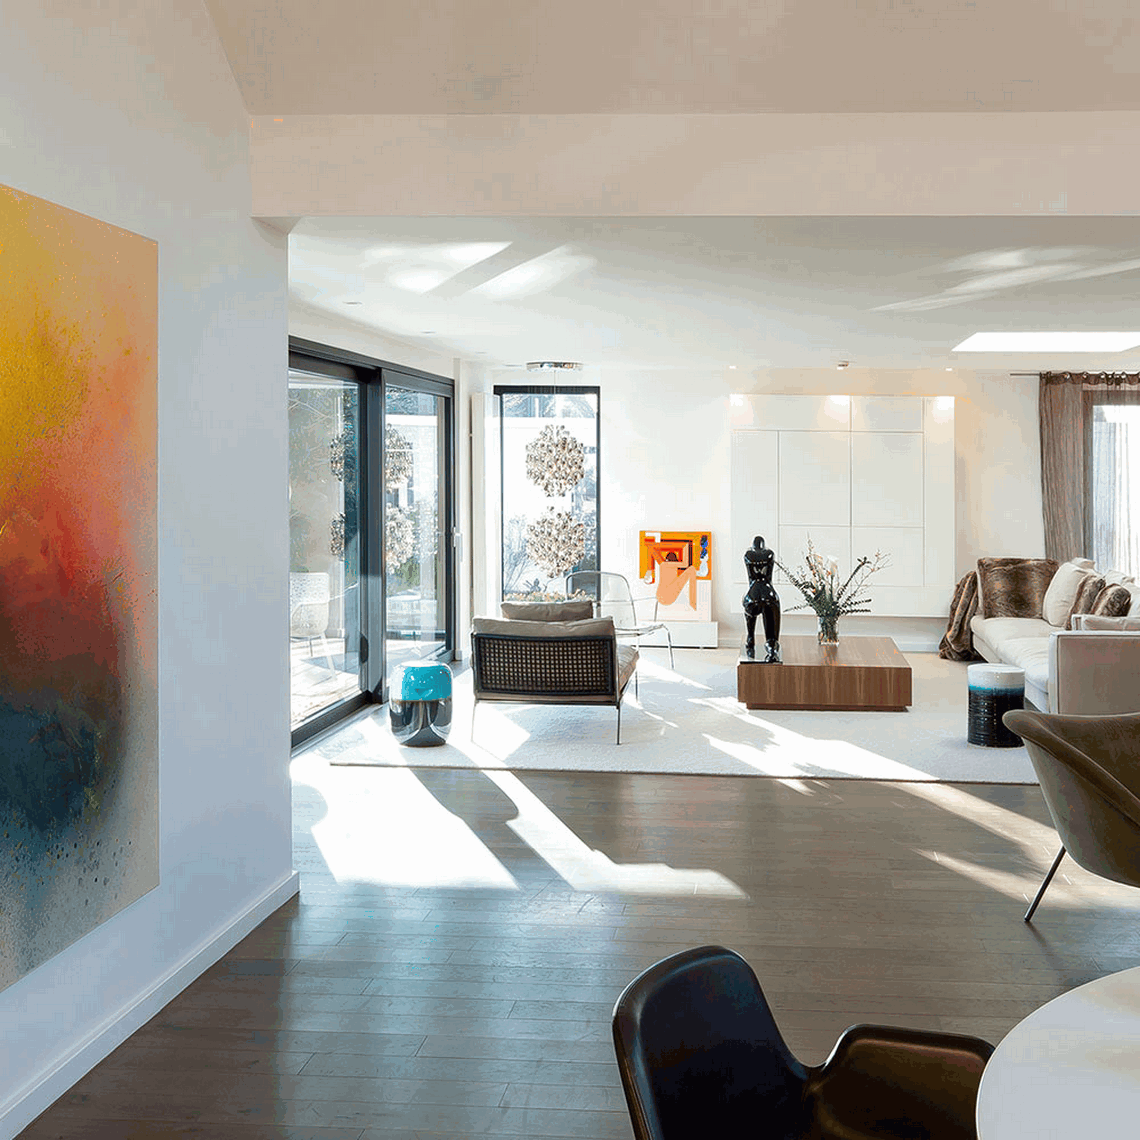 Kitzig Interior Design: Modern Home Decor For Every Taste